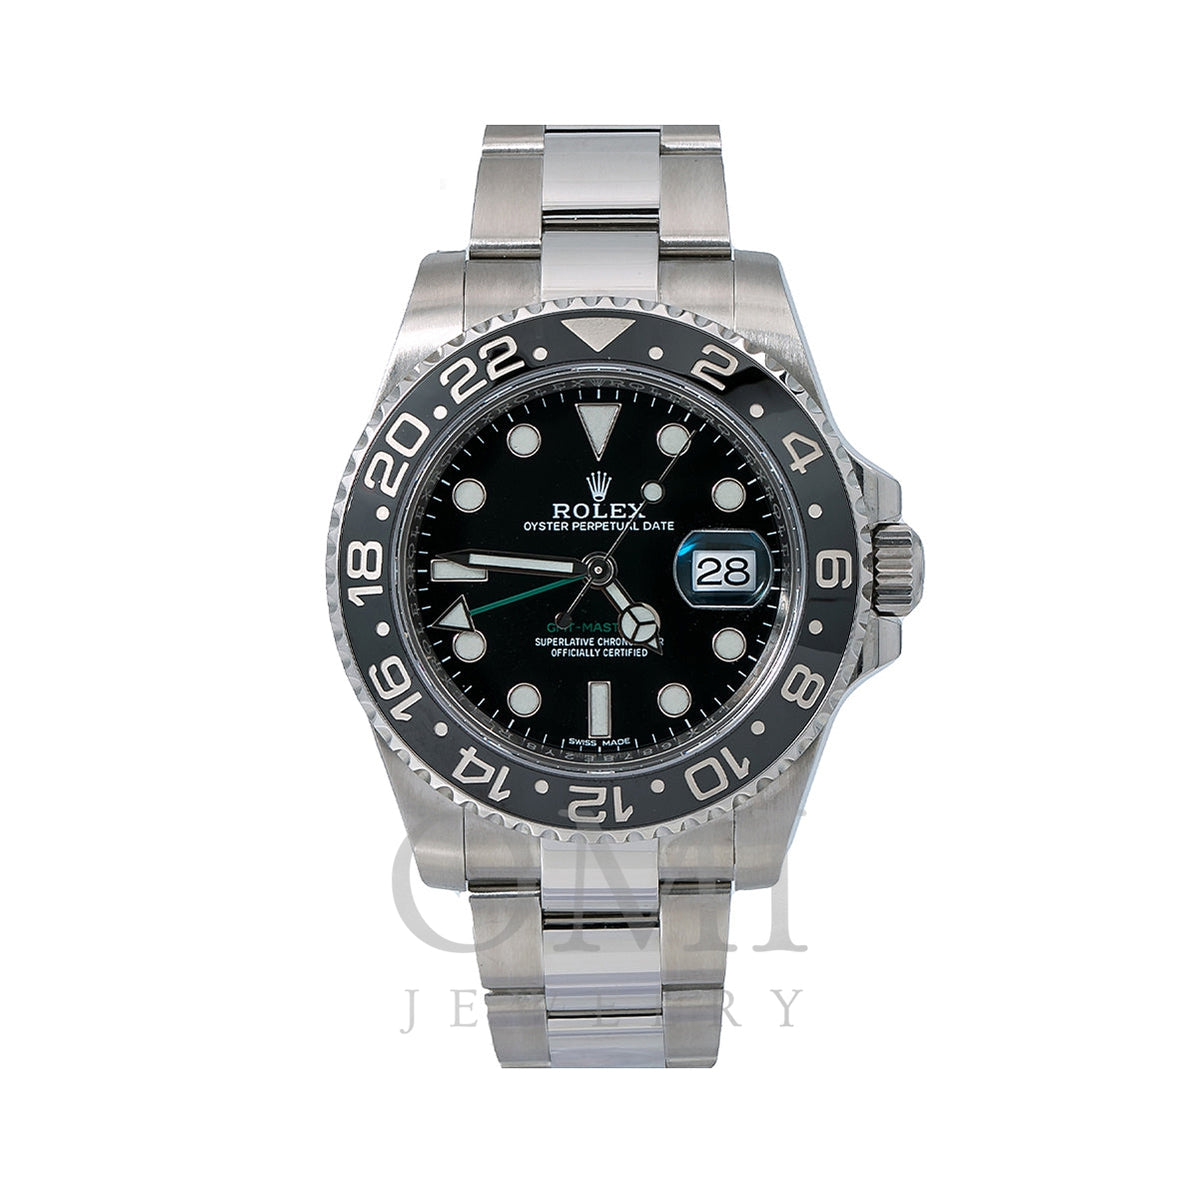 関税込 Rolex GMT-Master II 116710LN (ROLEX/アナログ時計) 116710LN+